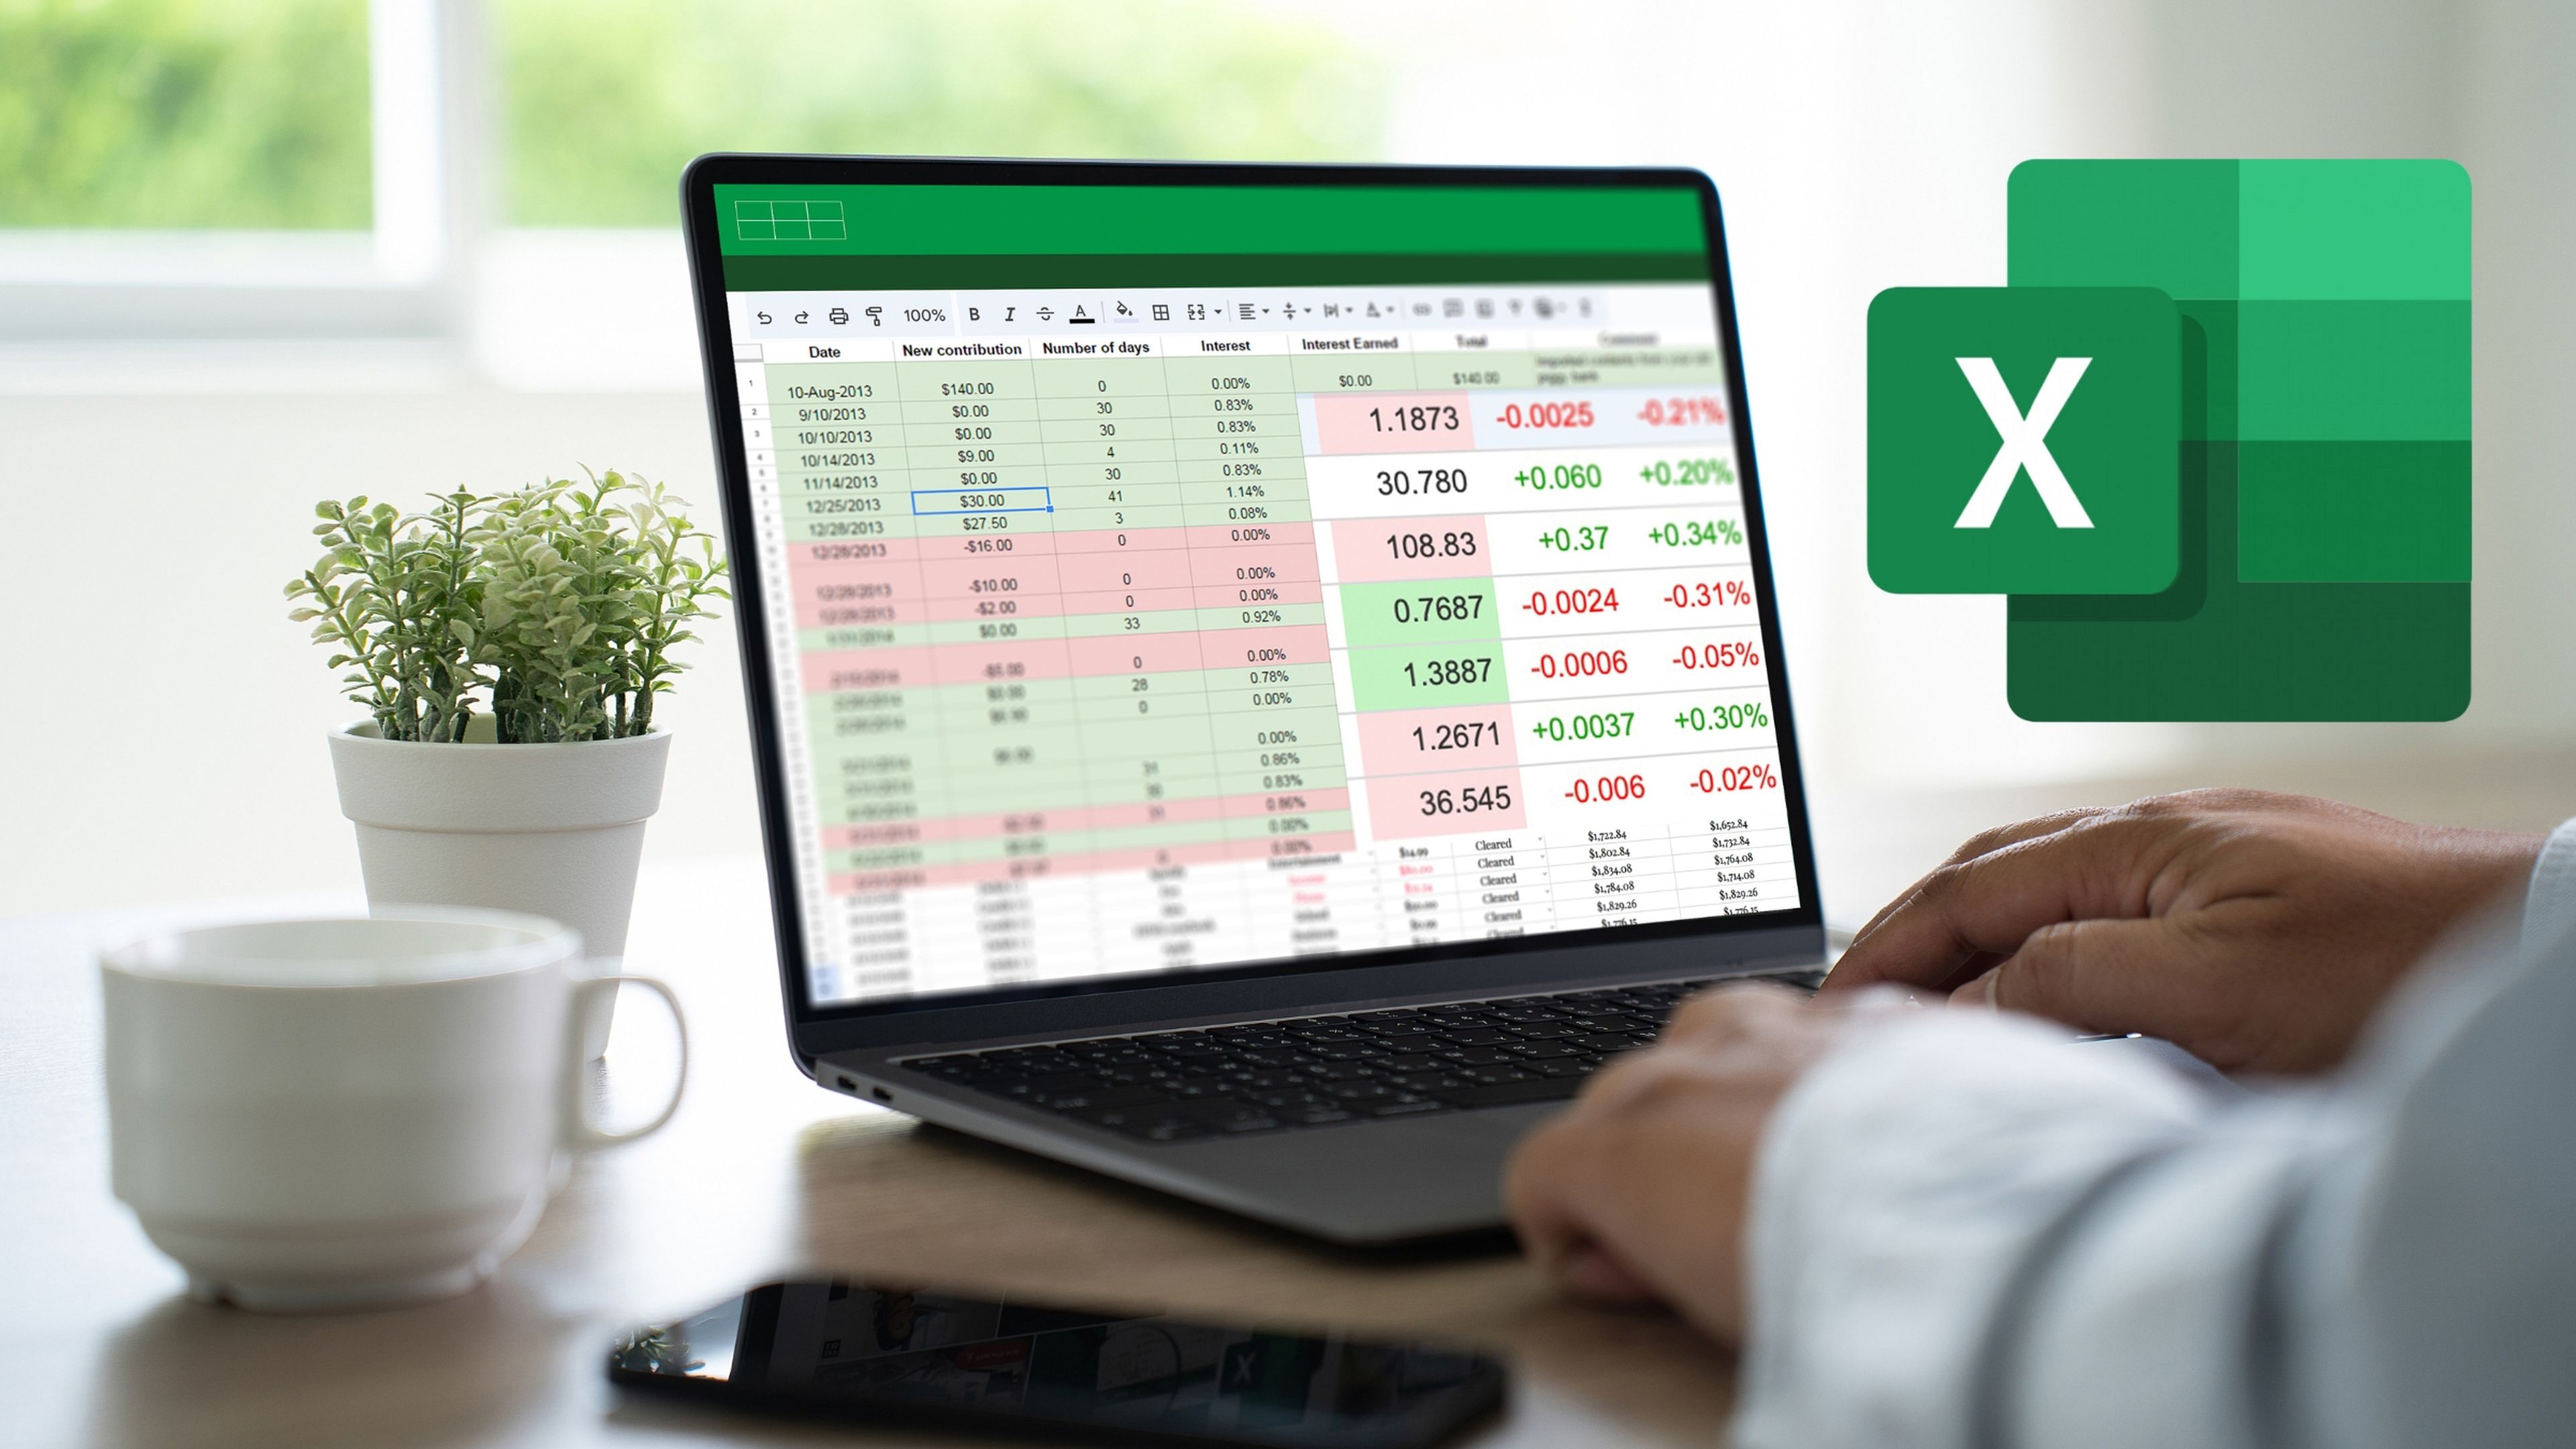 Qué es y cómo funciona la nueva función escanear de Excel